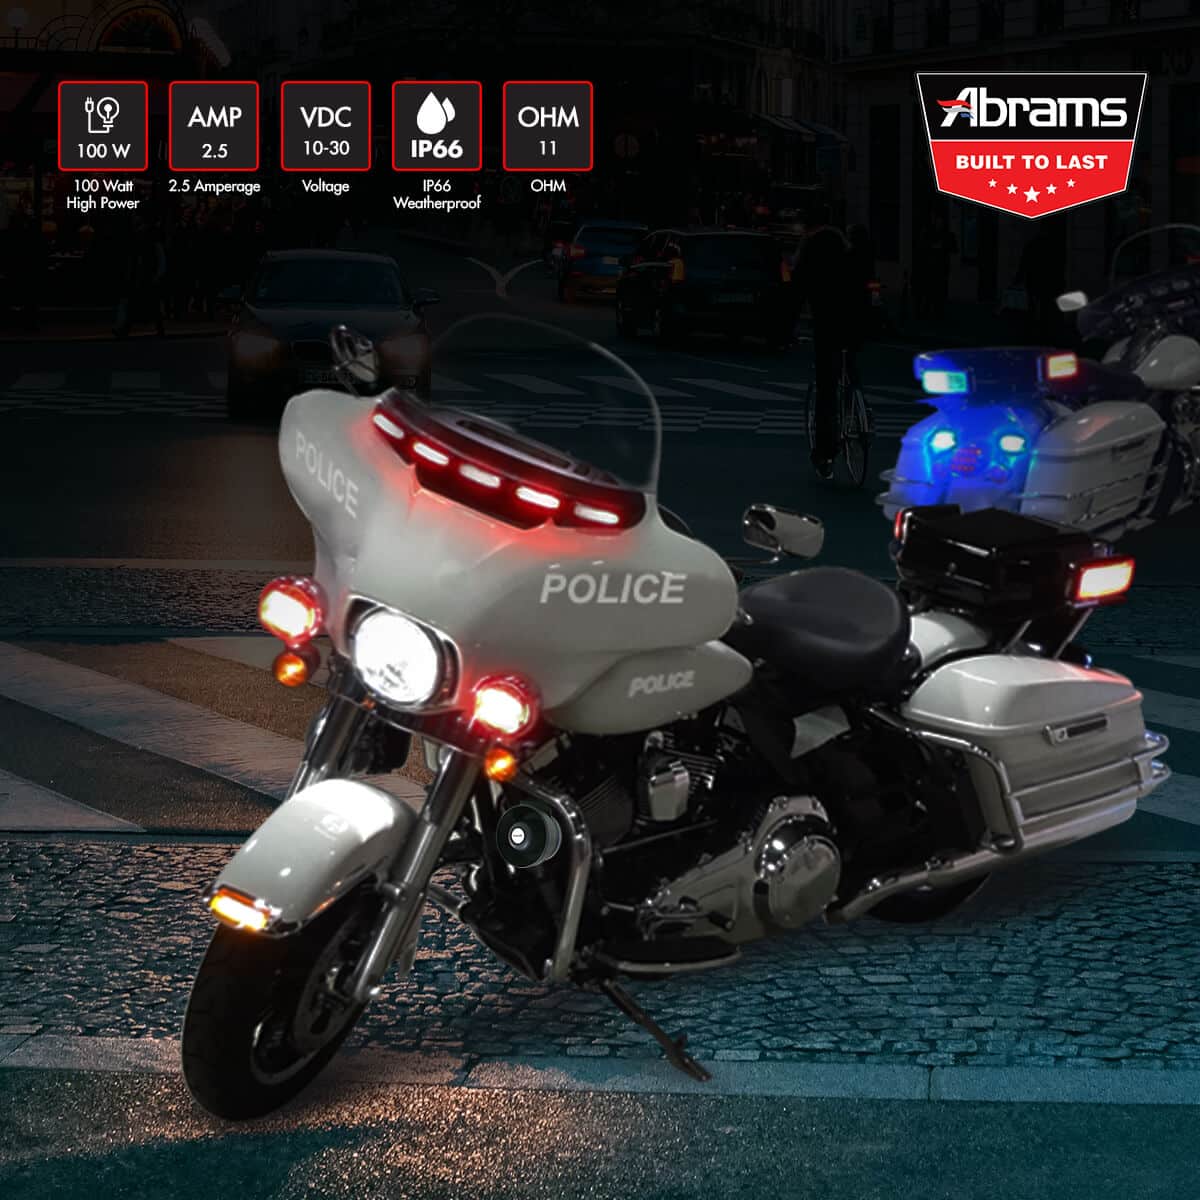 Abrams Macro 100W Motorcycle Siren System Kit